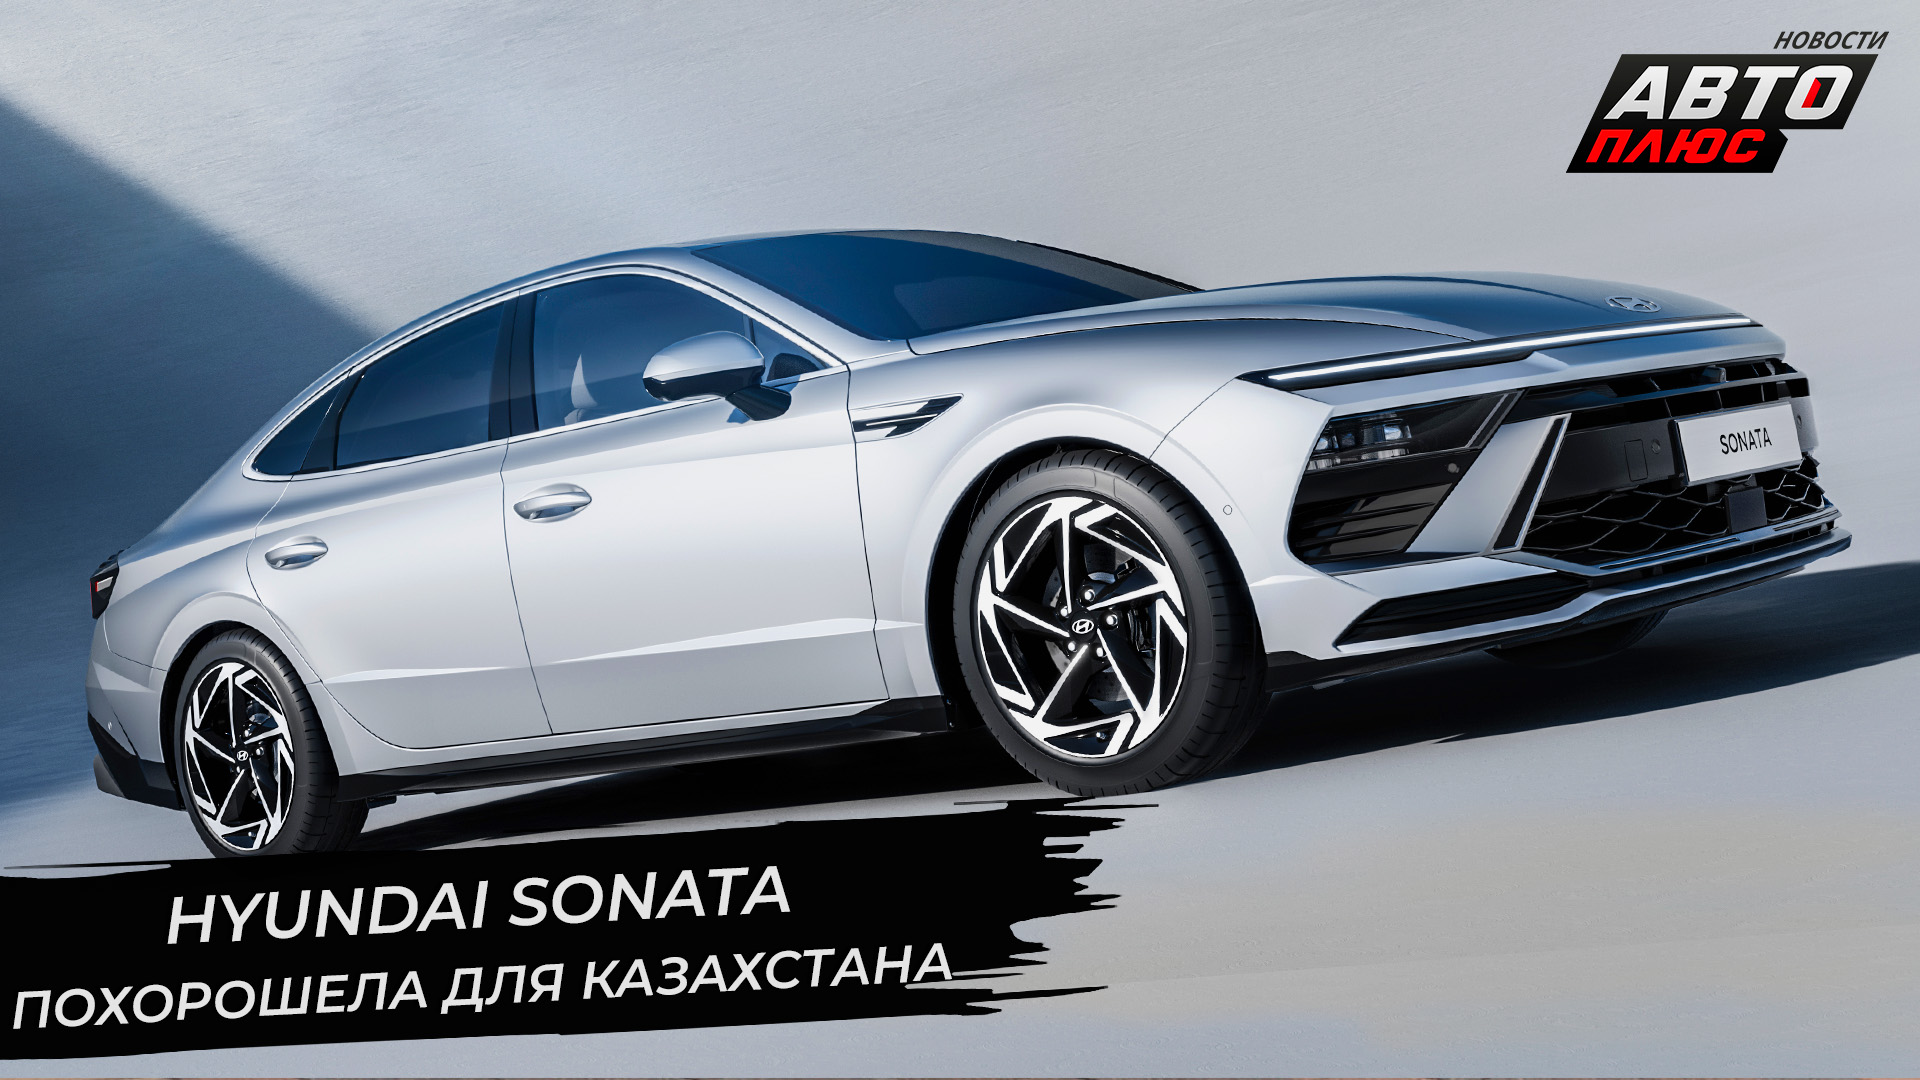 Hyundai Sonata похорошела. Nissan порадует Казахстан новой гаммой | Новости с колёс №2696